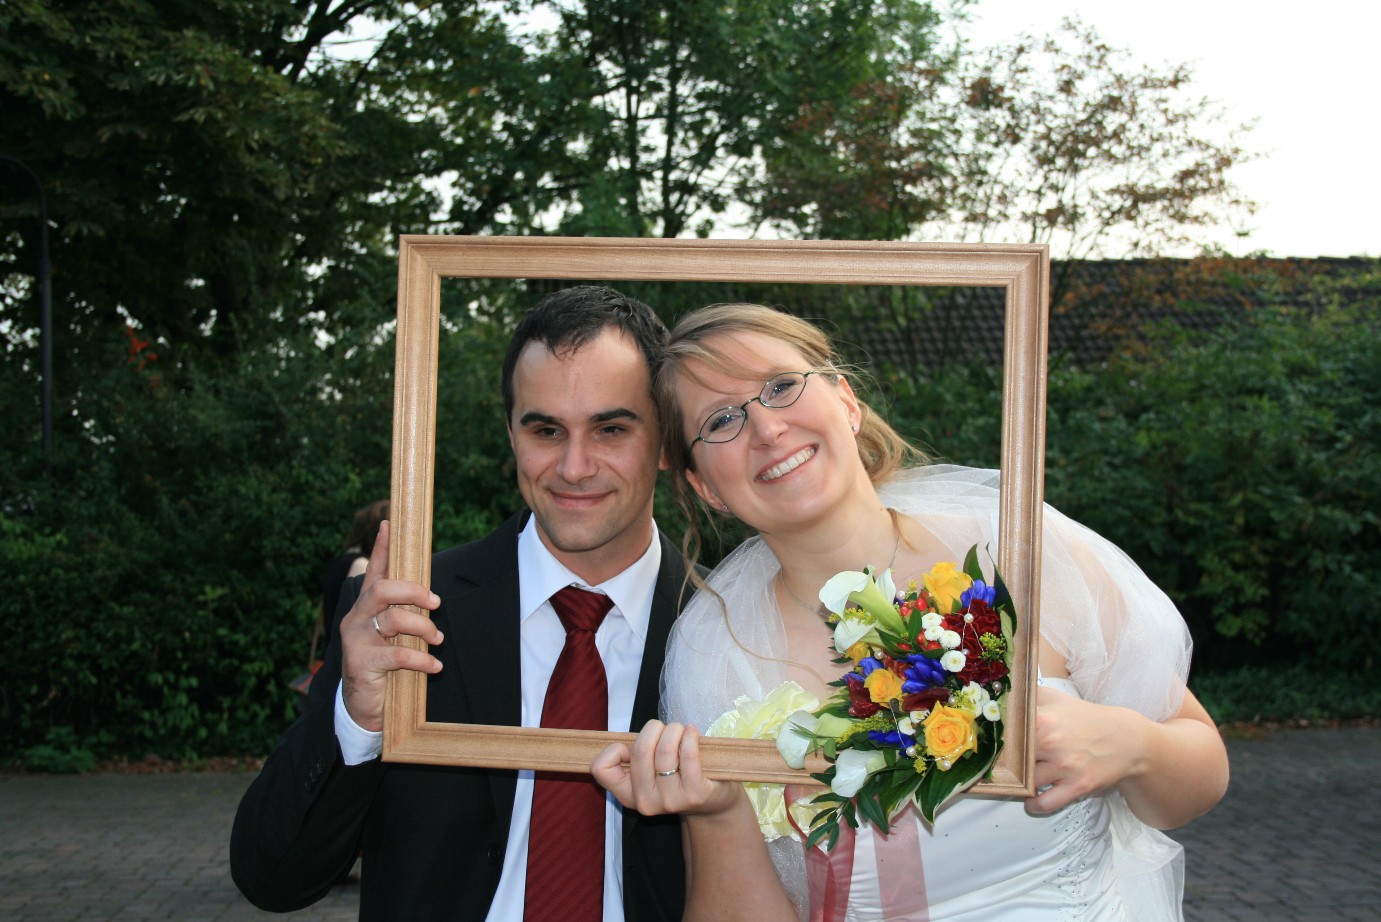 Das glückliche Brautpaar in einem Bilderrahmen